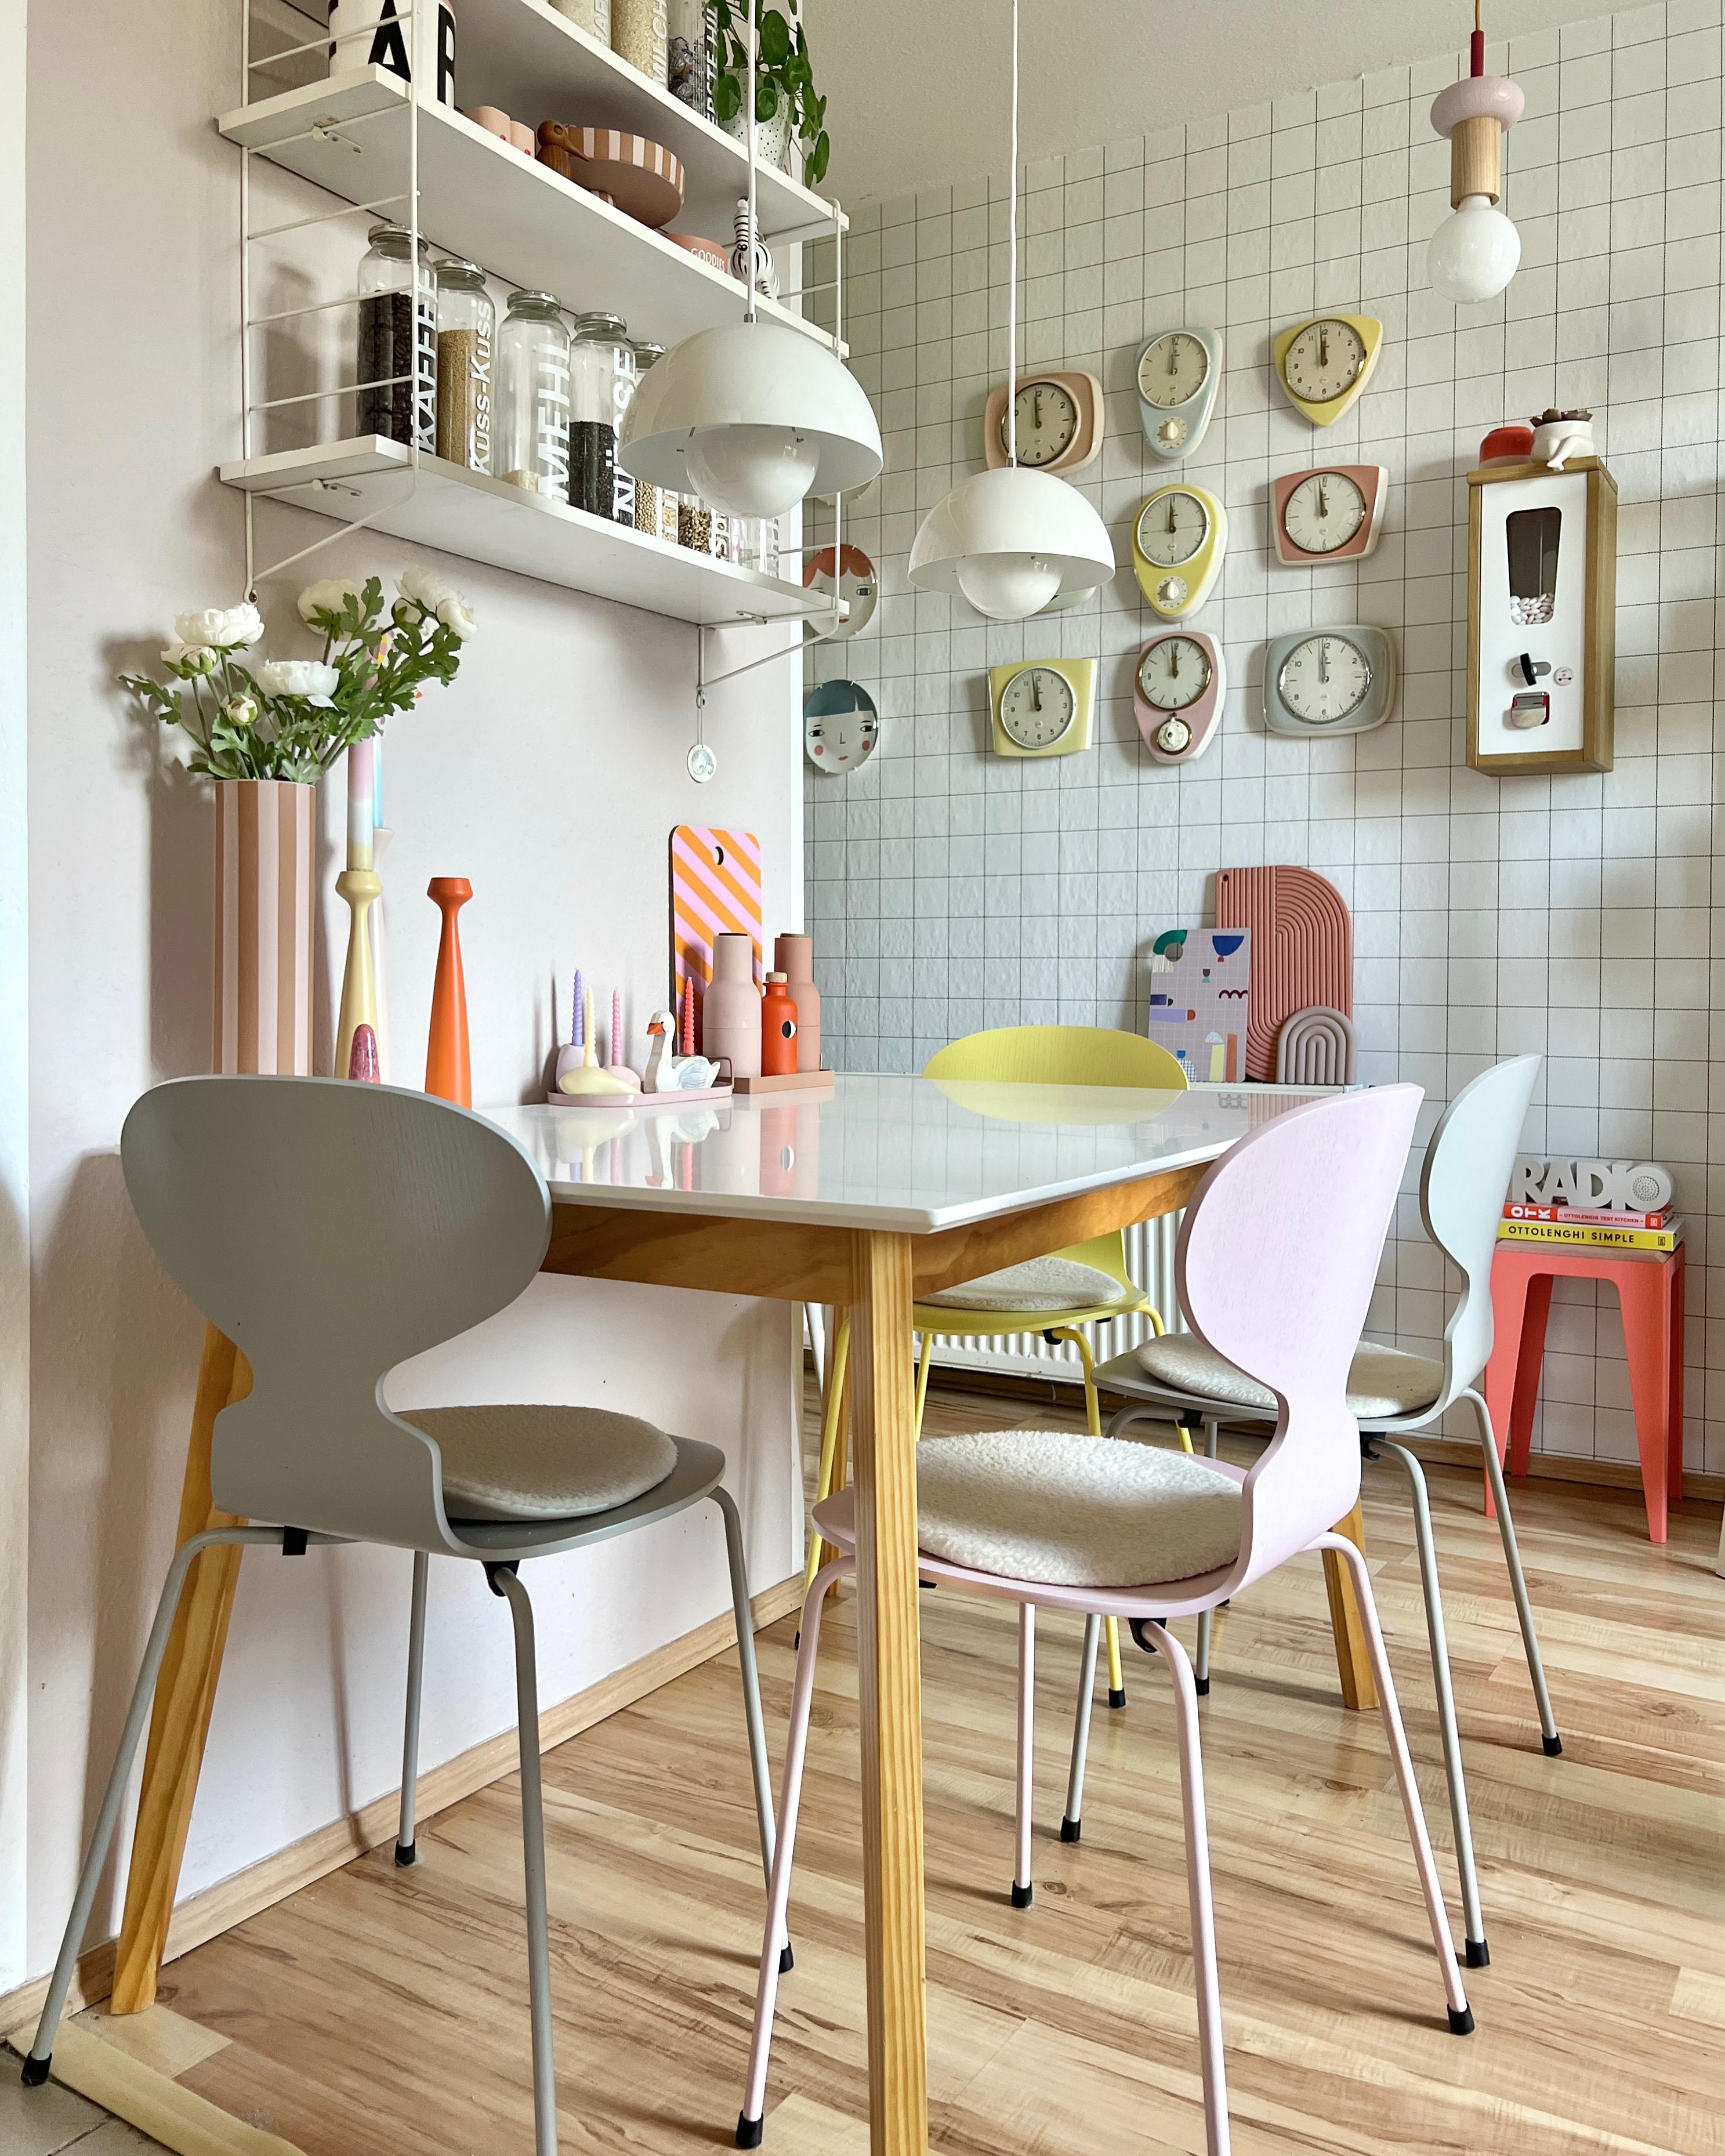 #interior #interiordesign #couchliebt #küche #esszimmer #essbereich #flowerpot #pastell #midcentury #pastell #50er #60er #vintage